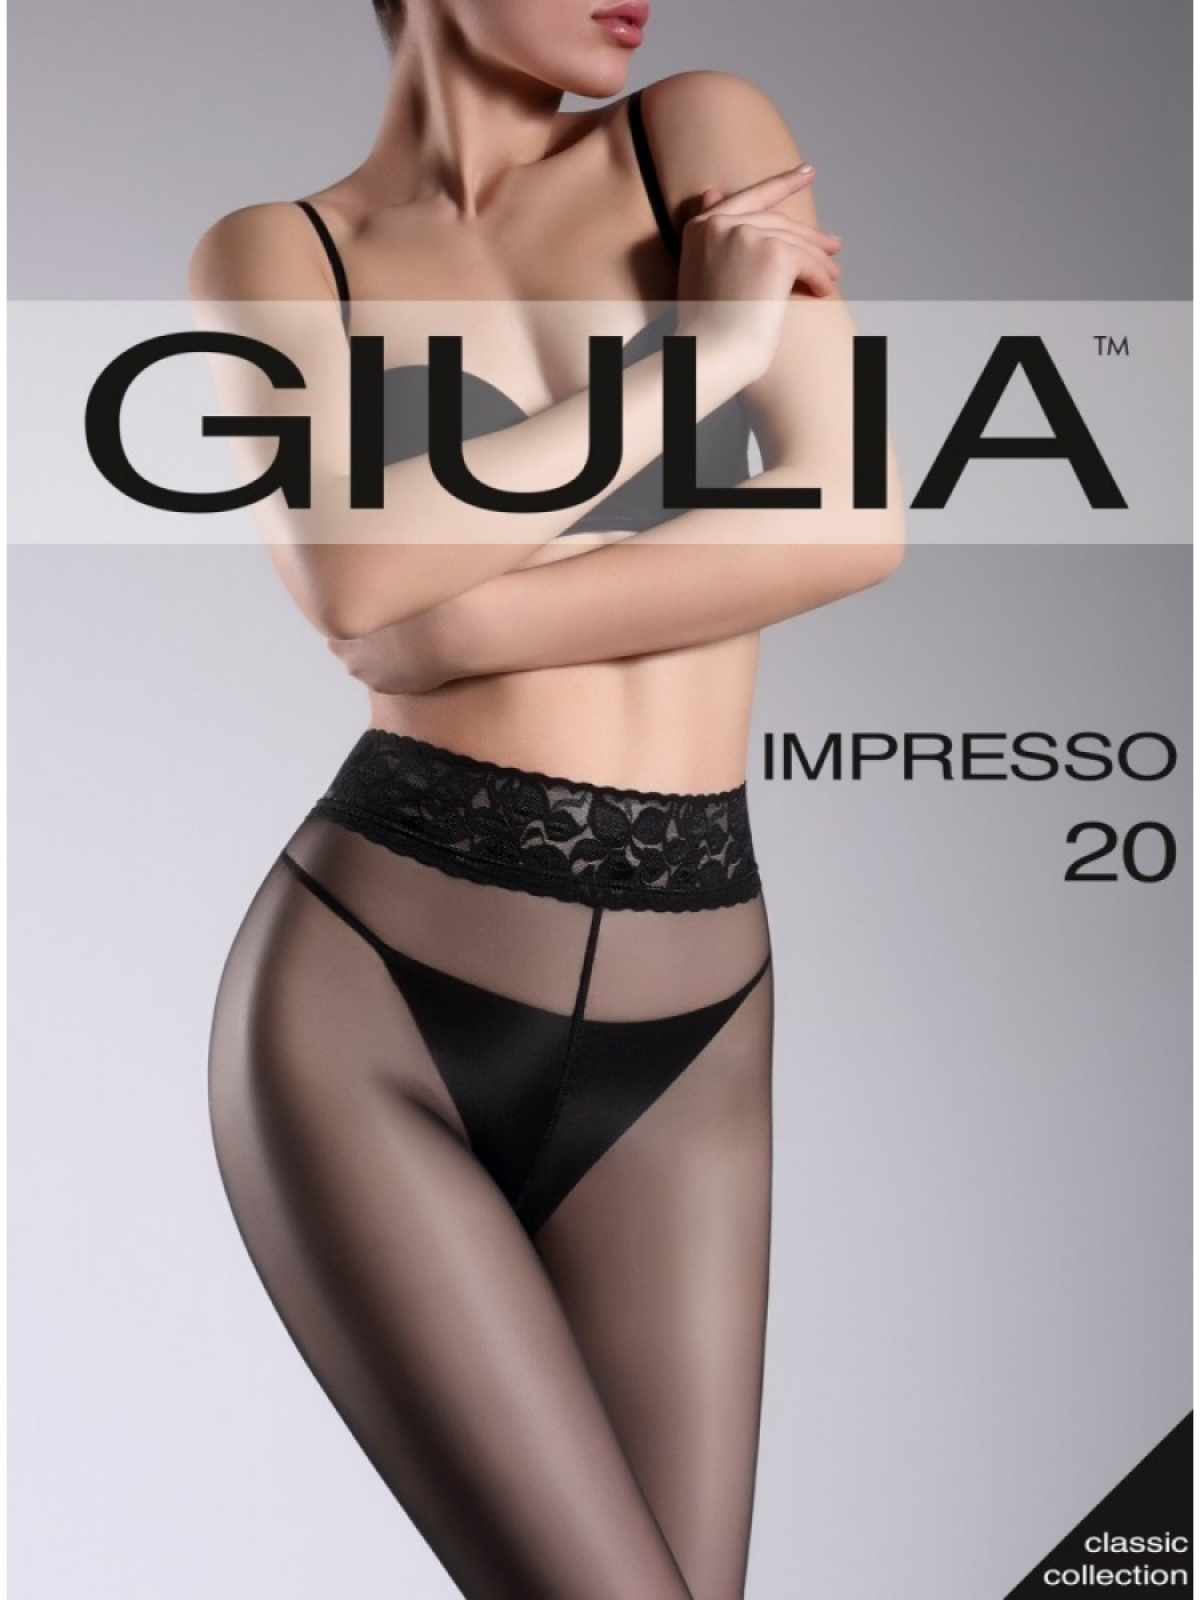 Колготки Giulia Impresso 20